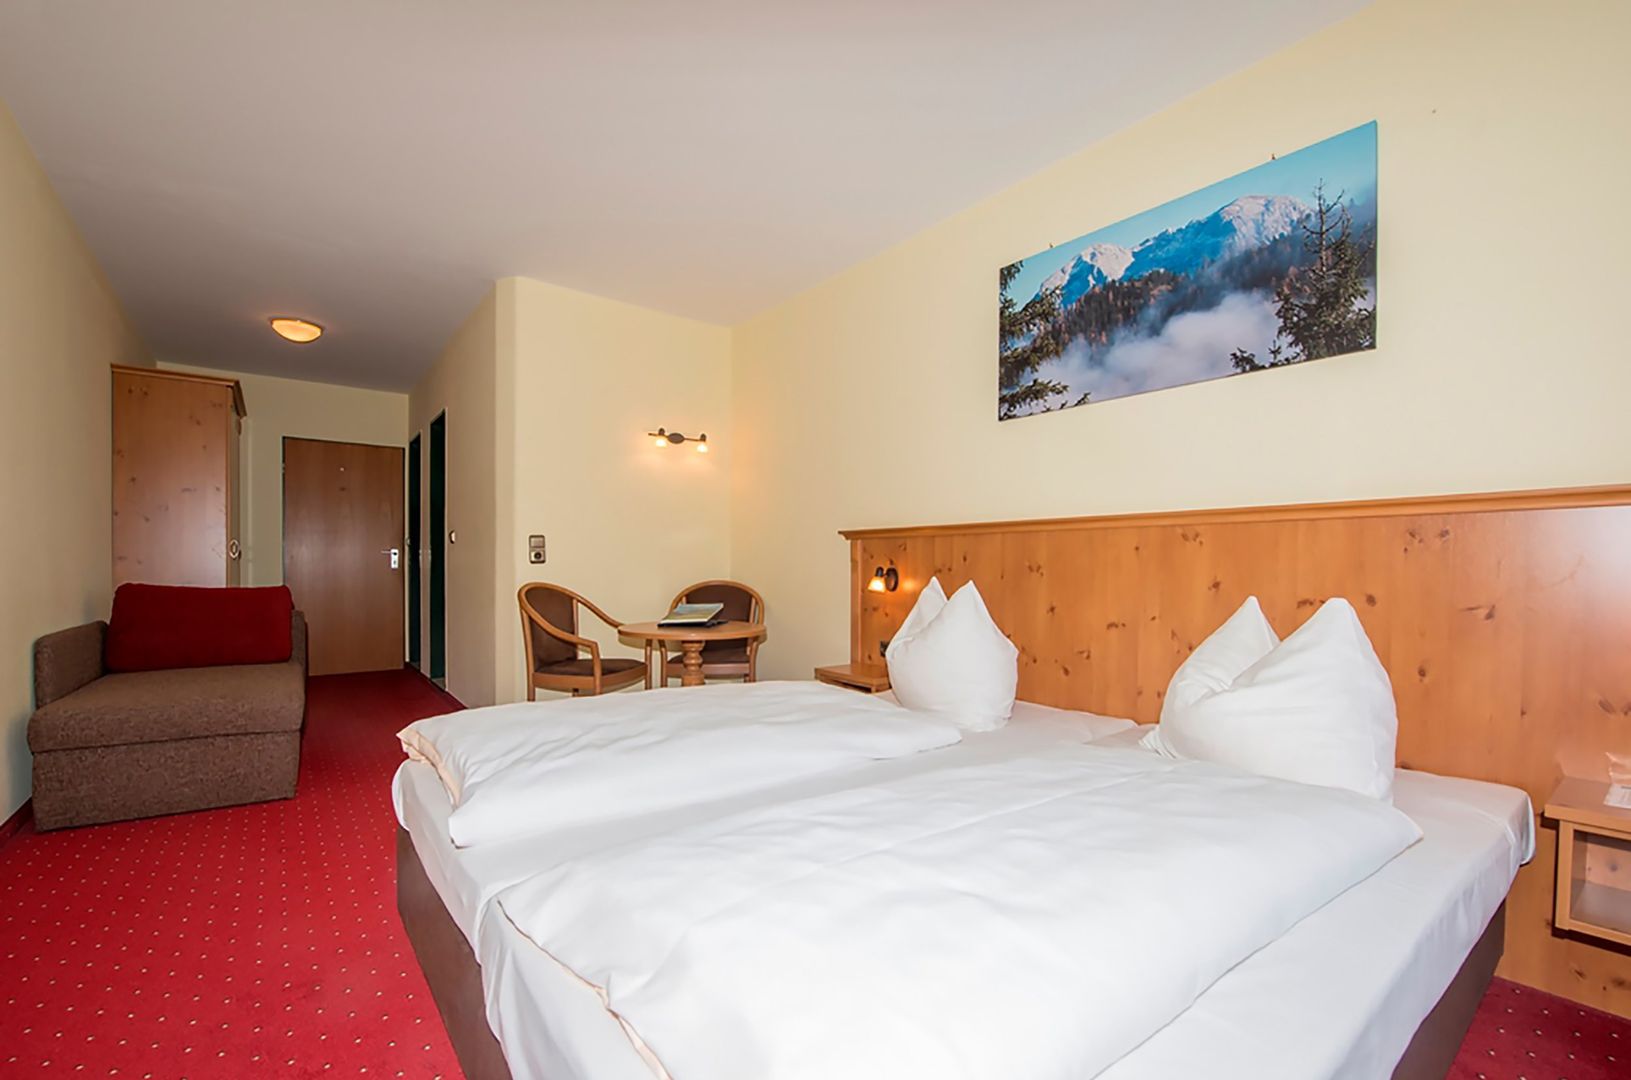 Goedkoop op wintersport Berchtesgadener Land ❄ Alpen-Hotel Seimler